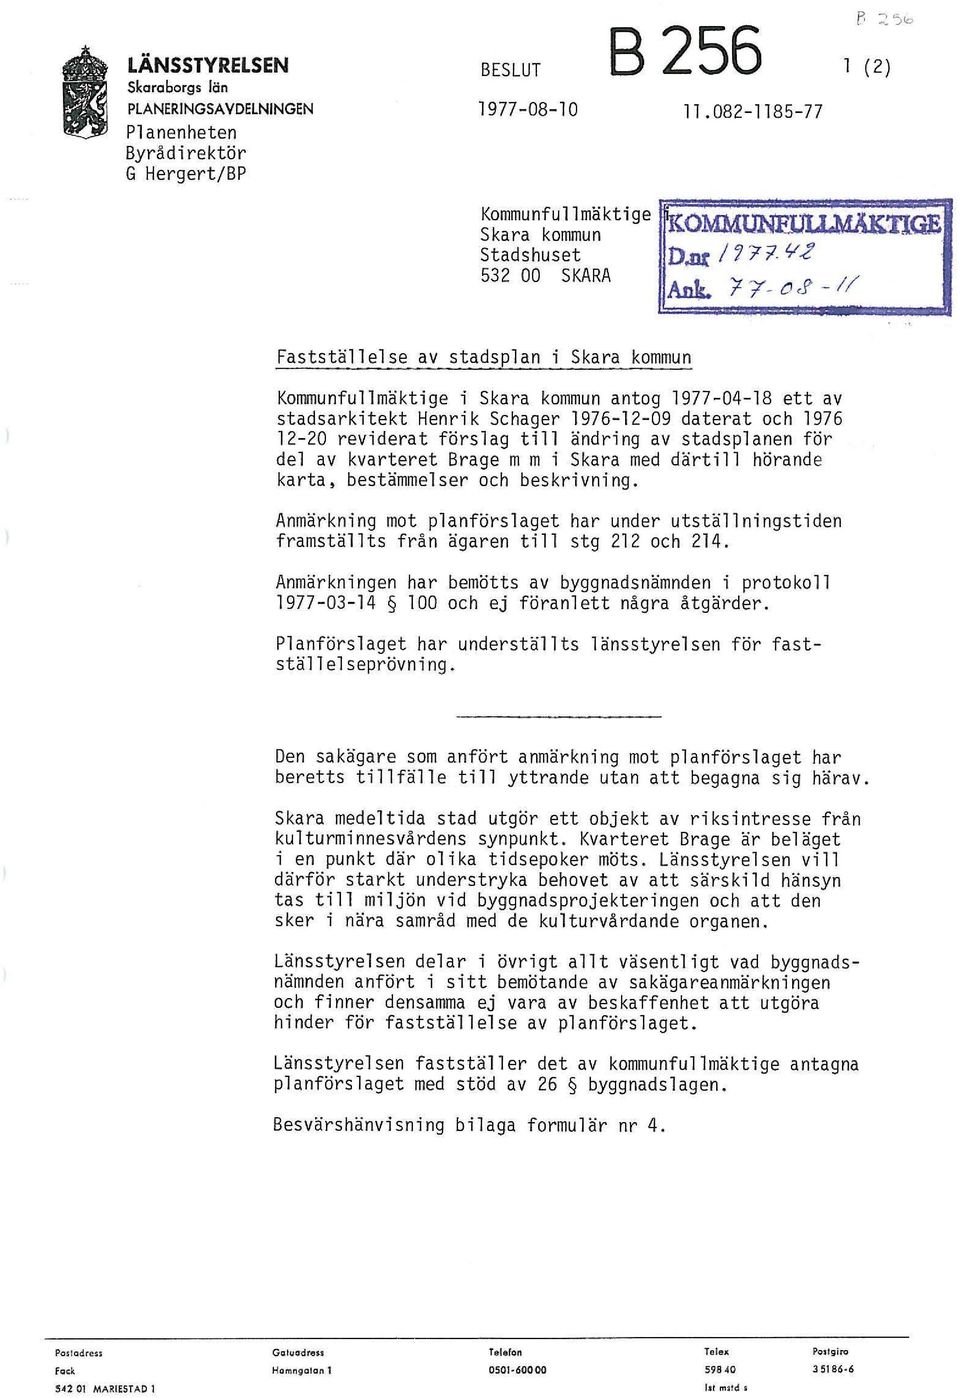 'ft'- oj>-i/ Fastställelse av stadsplan i Skara kommun Kommunfullmäktige i Skara kommun antog 1977-04-18 ett av Henrik Schager 1976-12-09 daterat och 1976 12-20 reviderat förslag till ändring av